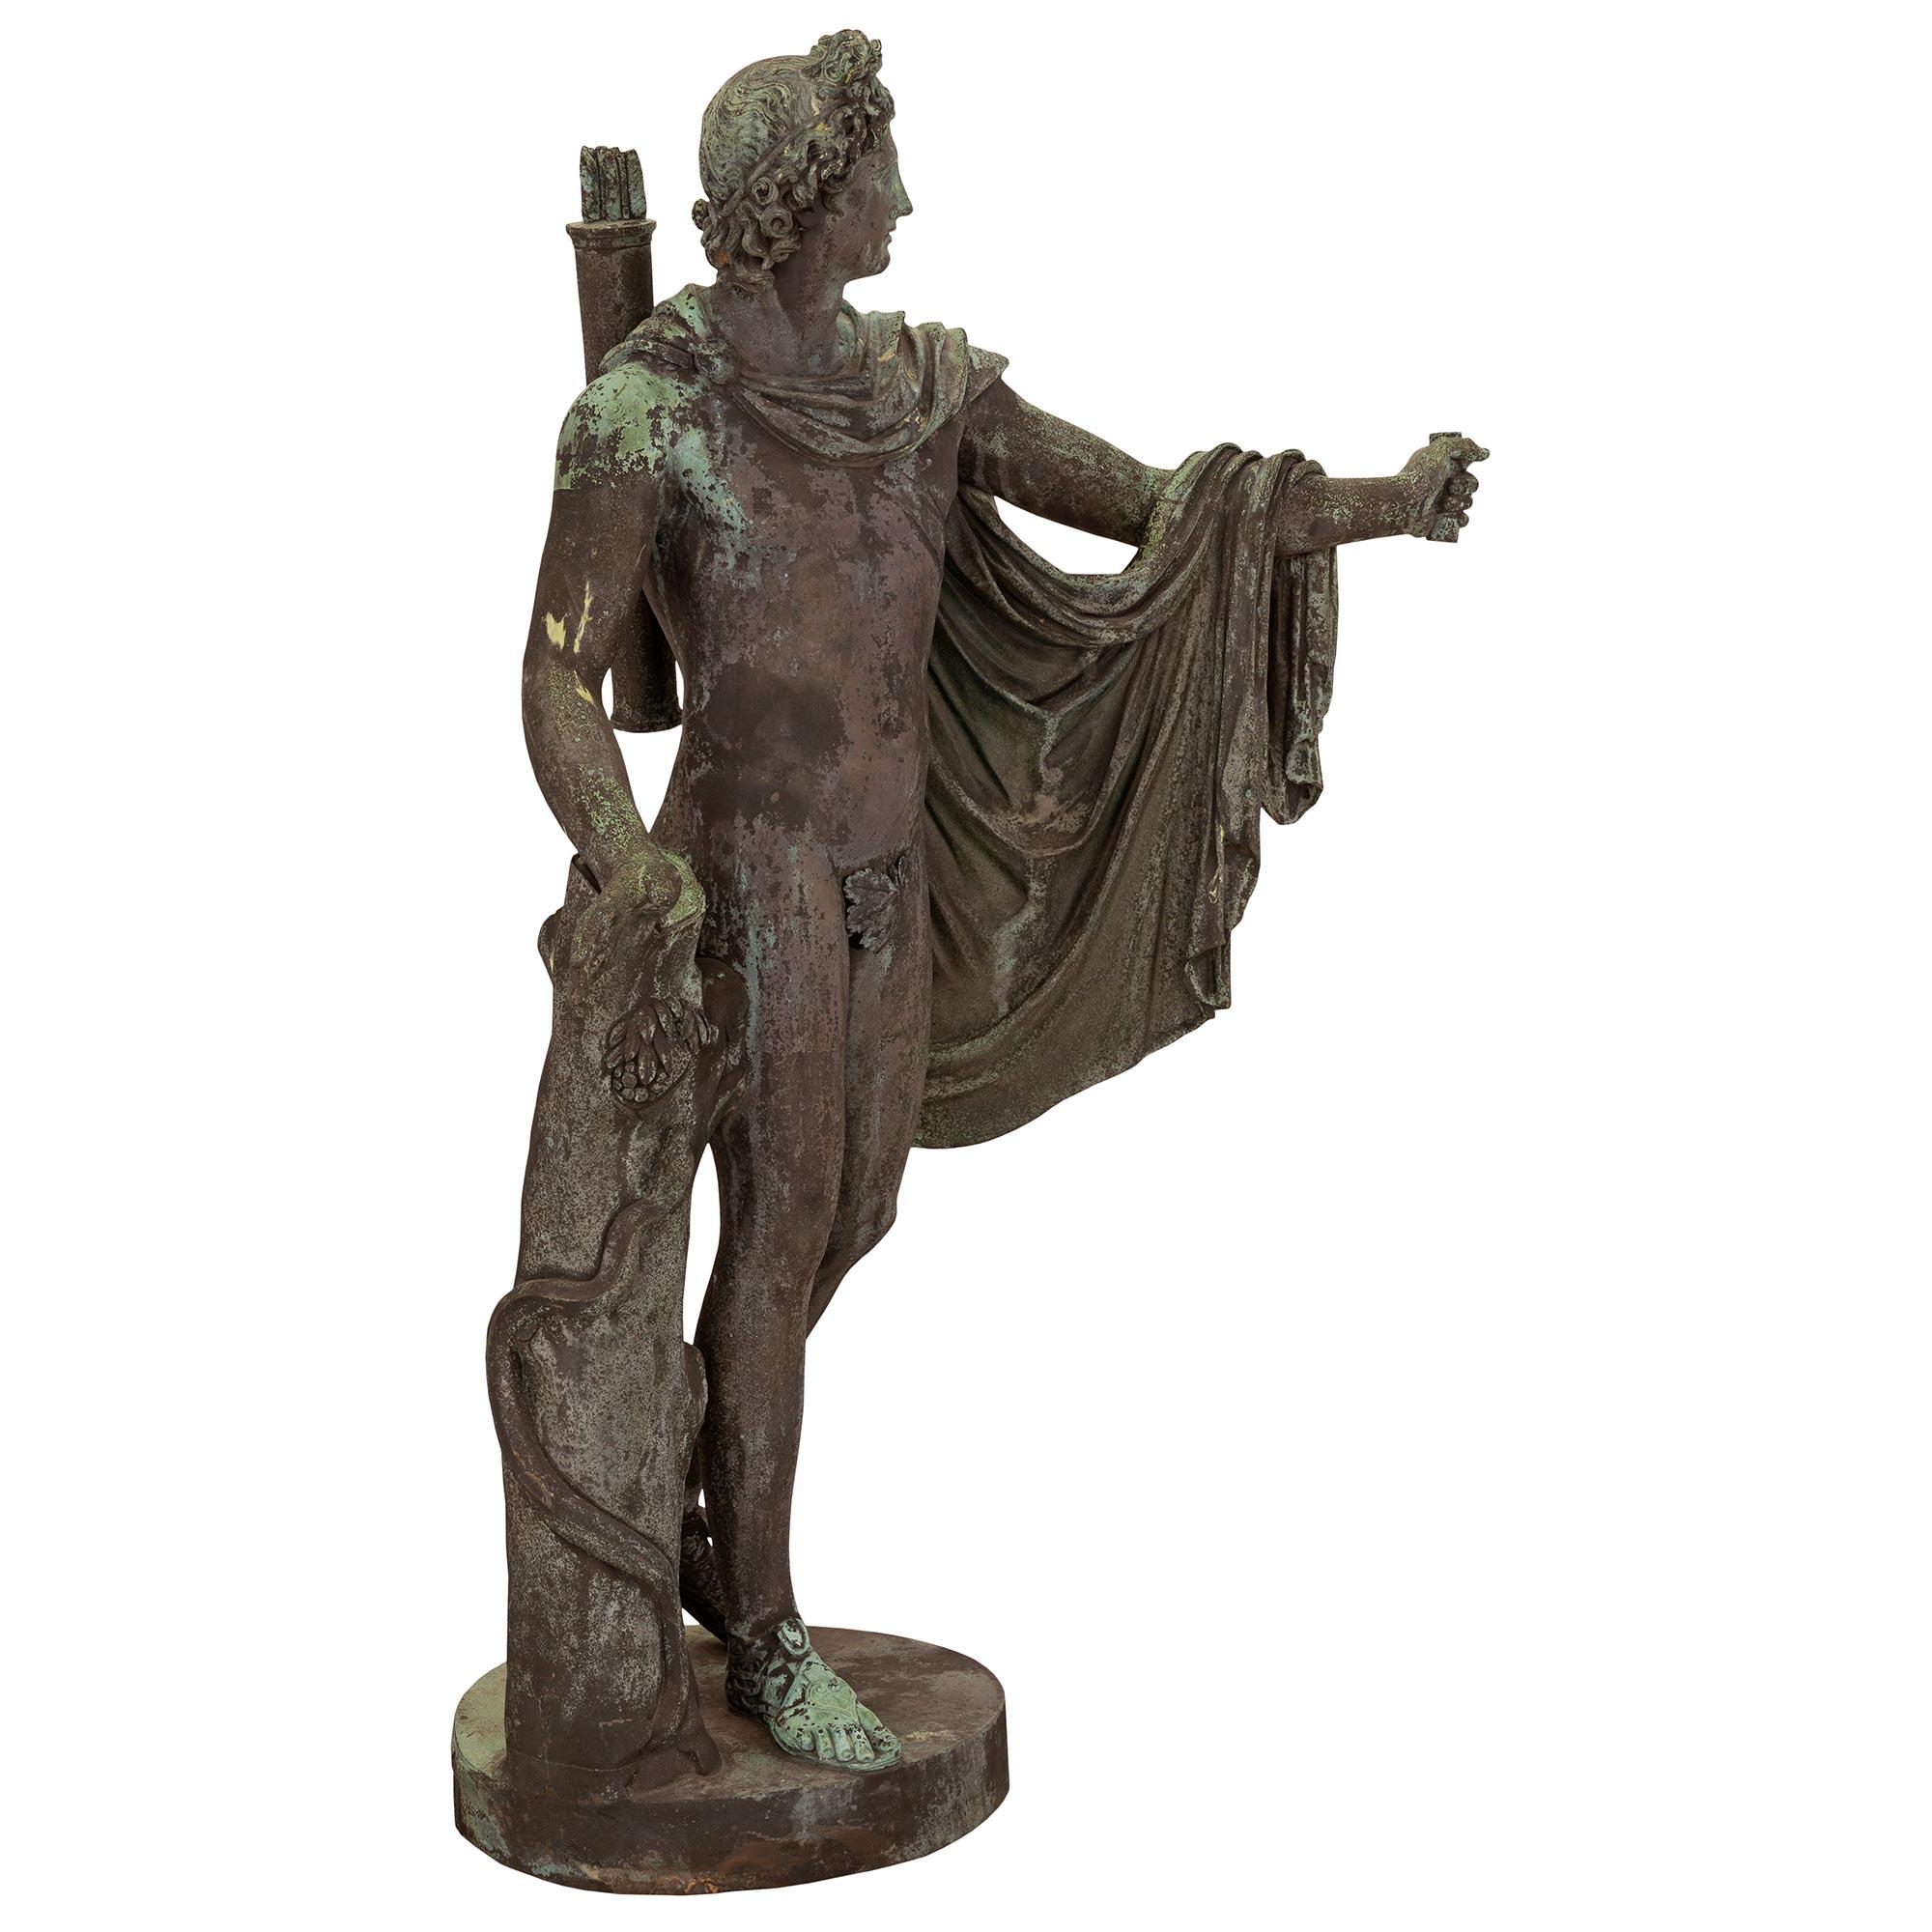 Belle statue italienne d'Apollo en bronze vert-de-gris du XIXe siècle, de grande qualité. La statue est surélevée par une base circulaire avec un tronc d'arbre finement détaillé. Le bel Apollo est drapé dans une cape attachée autour de son cou et